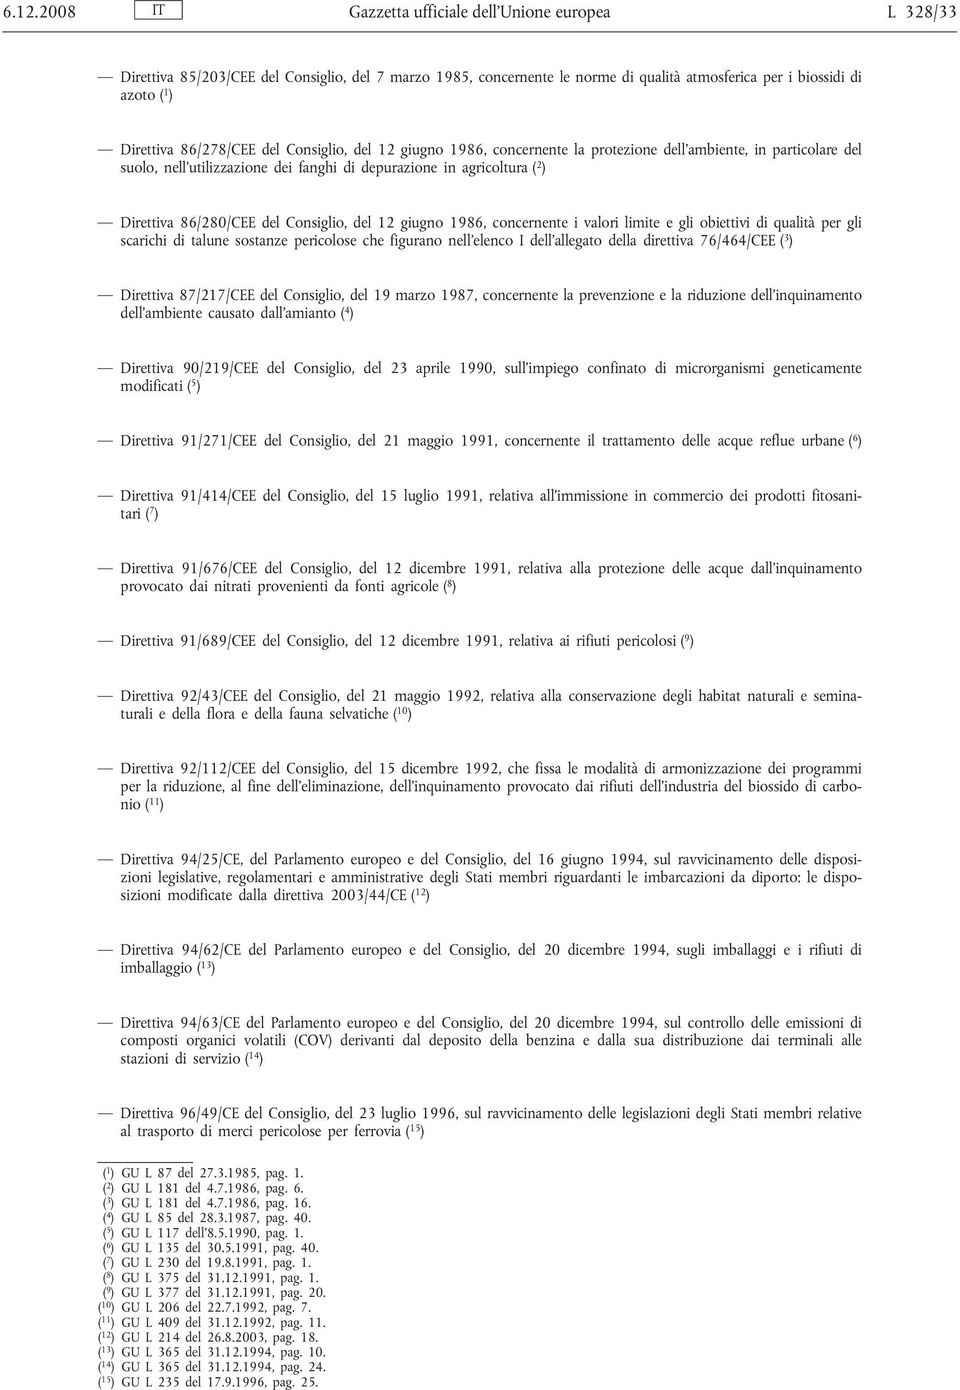 del Consiglio, del 12 giugno 1986, concernente i valori limite e gli obiettivi di qualità per gli scarichi di talune sostanze pericolose che figurano nell elenco I dell allegato della direttiva